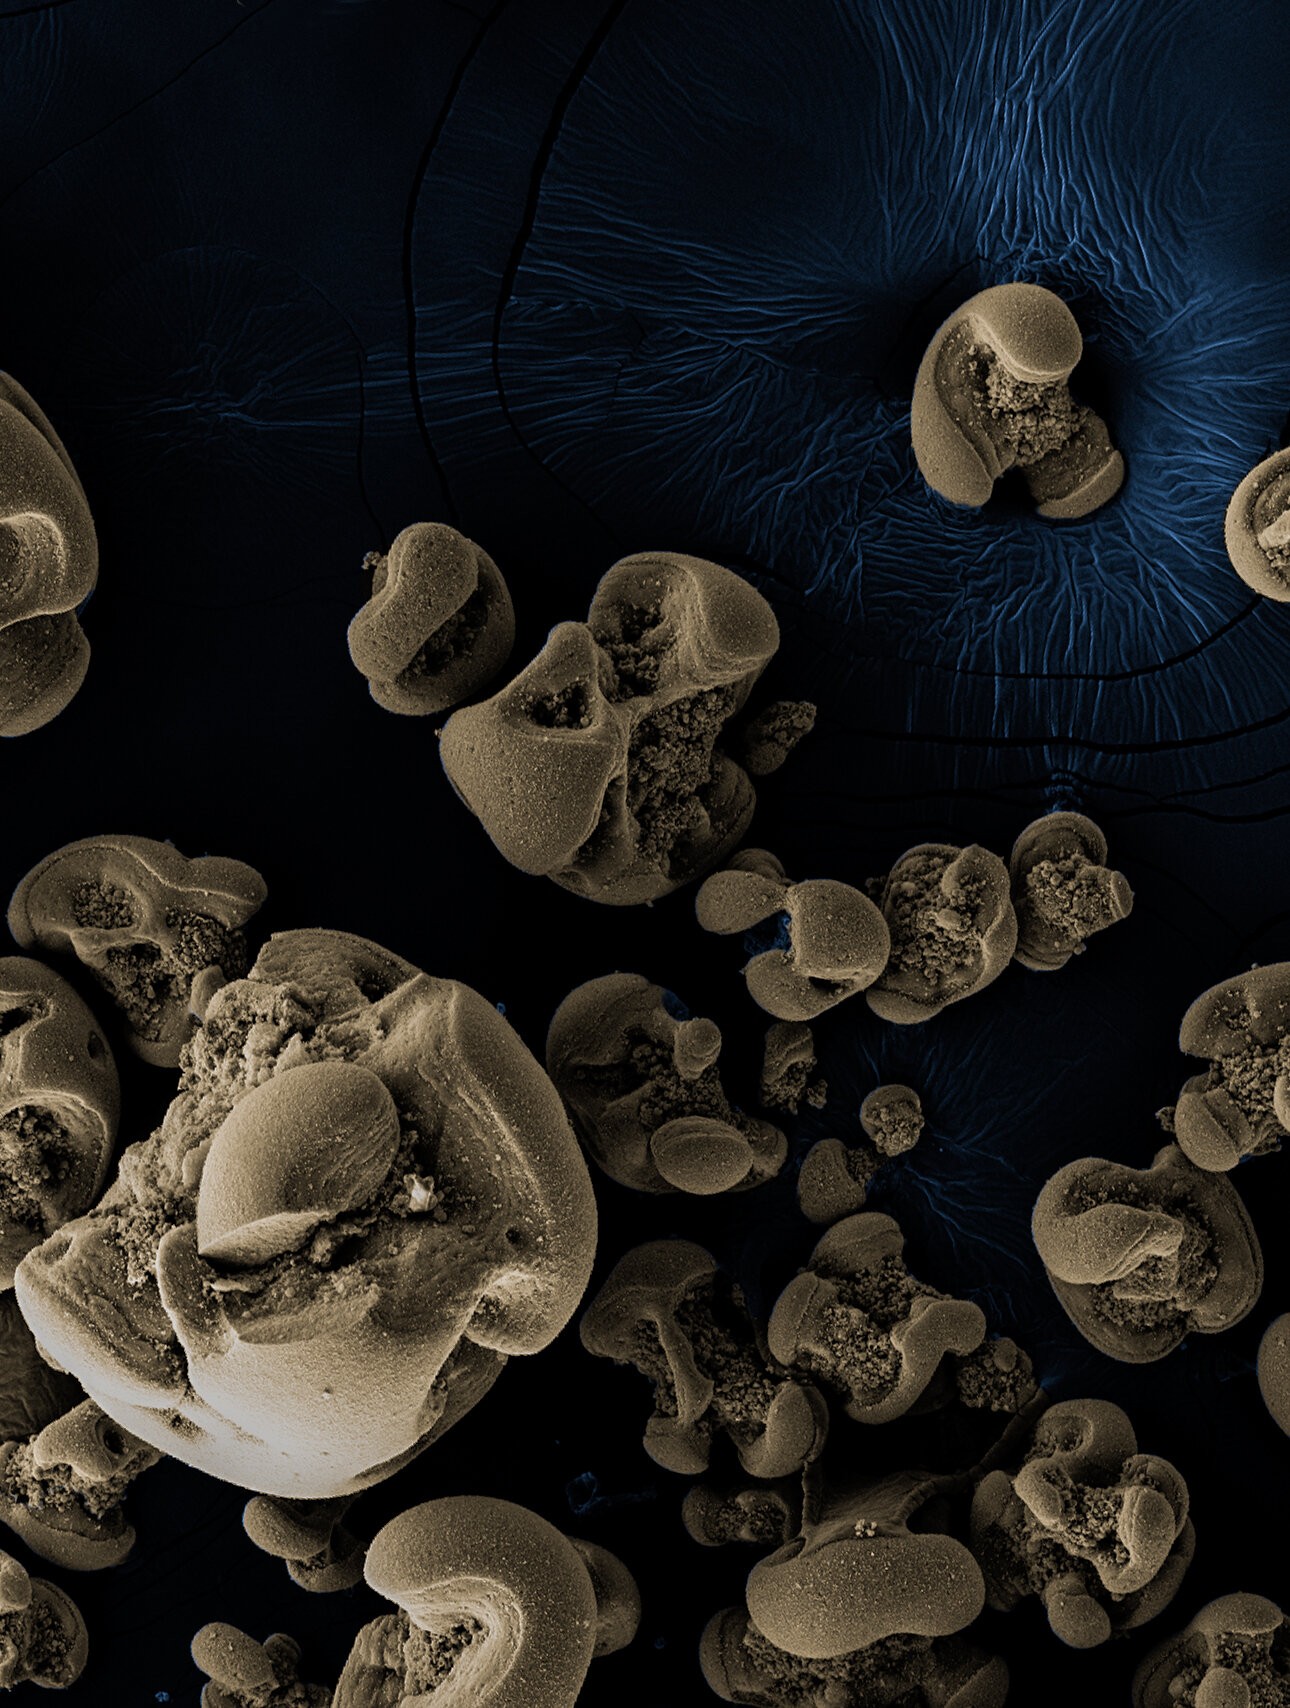 Nódulos de óxido de manganês gerados pelas bactérias descobertas pela equipe Caltech. Os nódulos geralmente têm cerca de 0,1 a 0,5 milímetros de diâmetro. As imagens estão digitalizando micrografias eletrônicas com colorização falsa. (Foto: Hang Yu / Caltech)